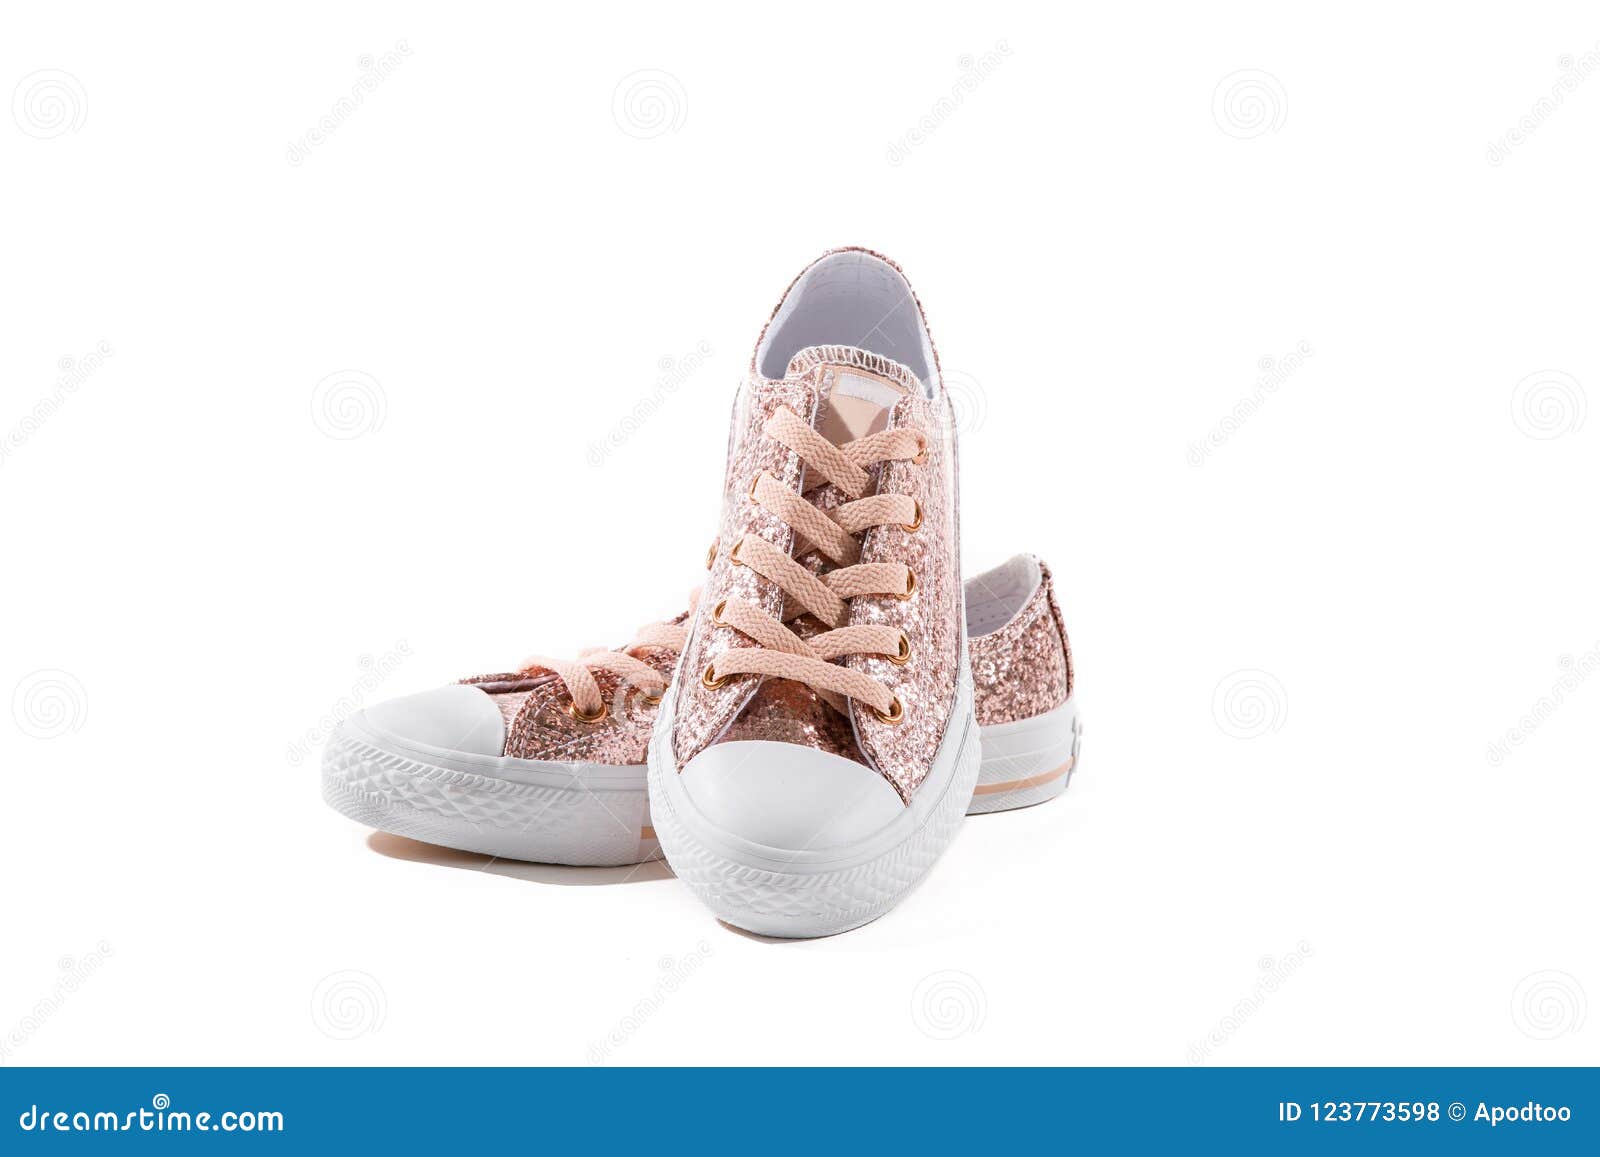 girls glitter tennis shoes